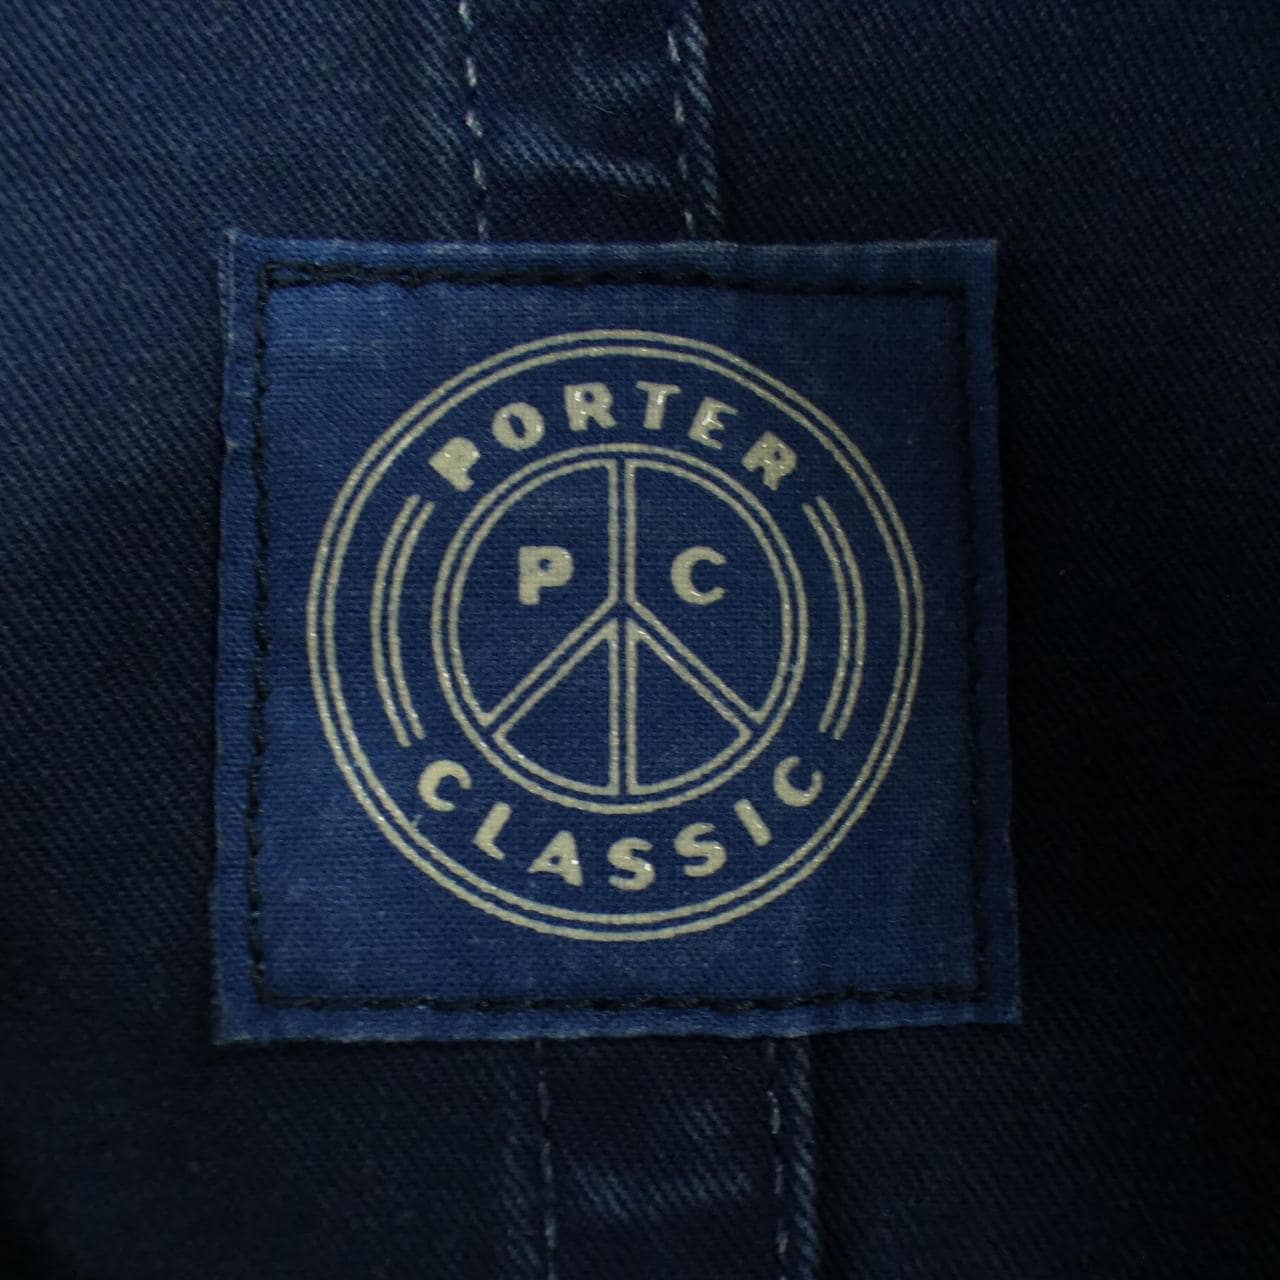 Porter classical music PORTER CLASSIC coat